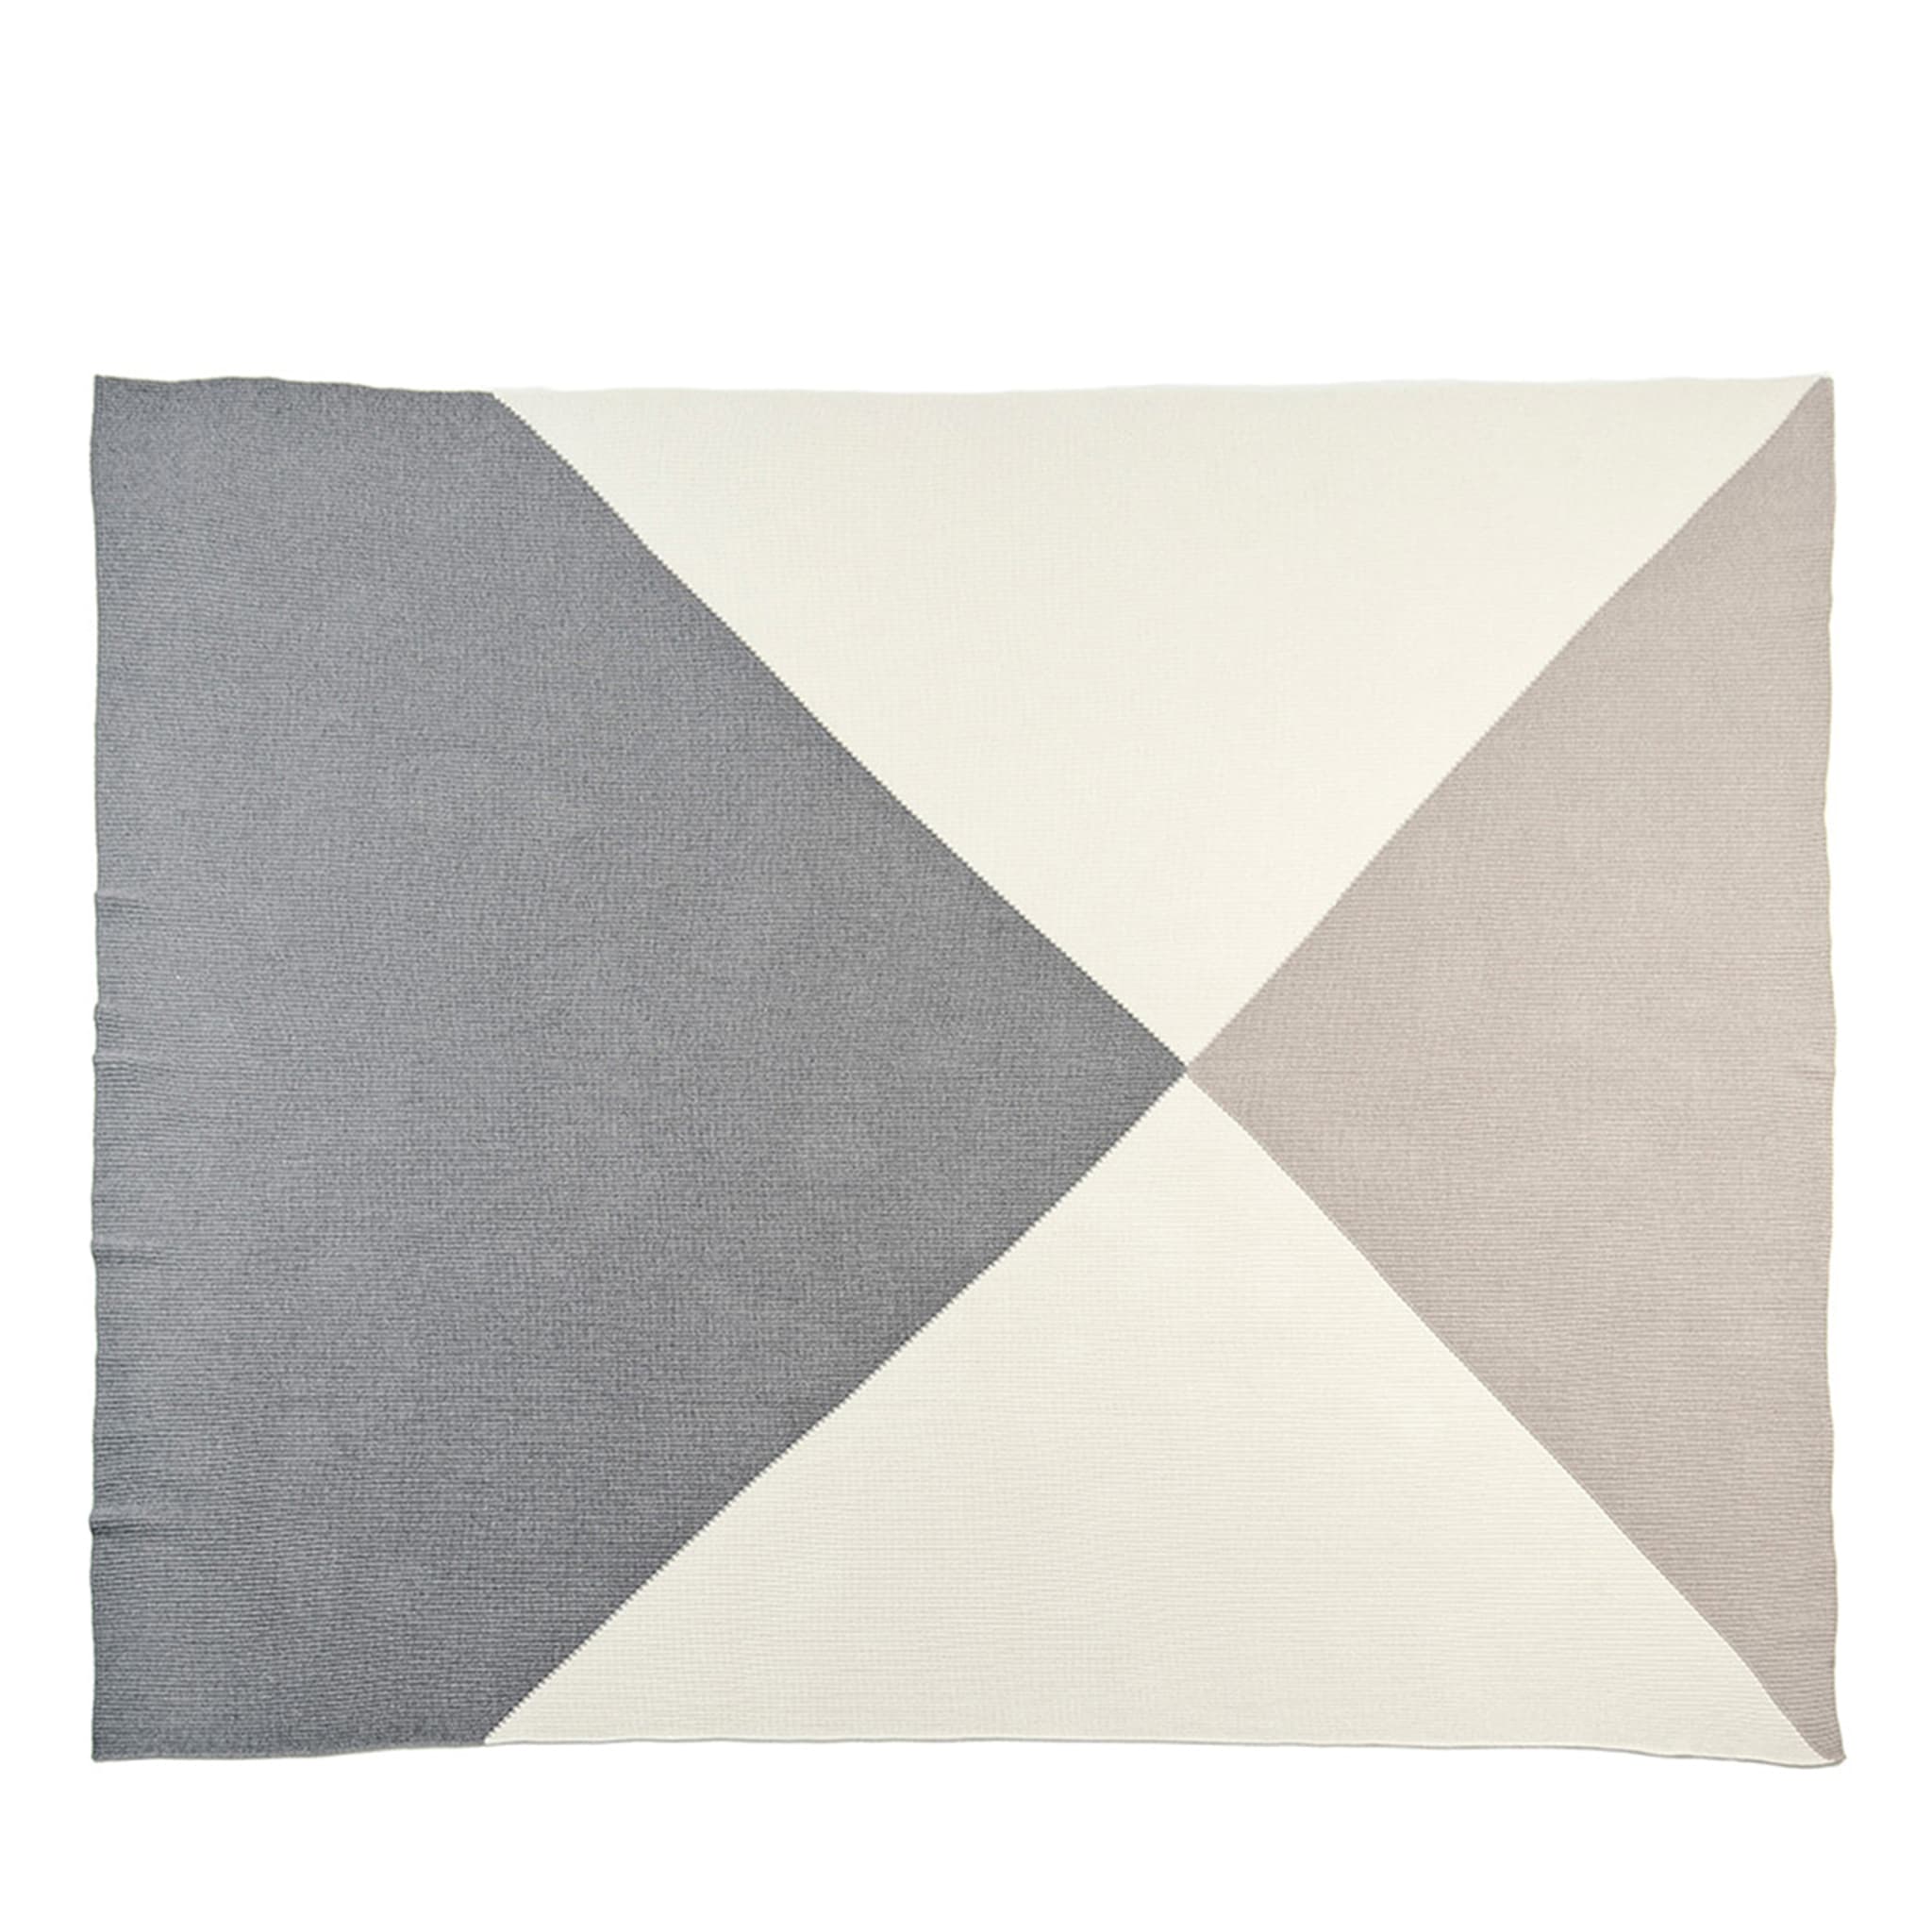 Crossing White/Light-Gray/Beige Blanket - Main view